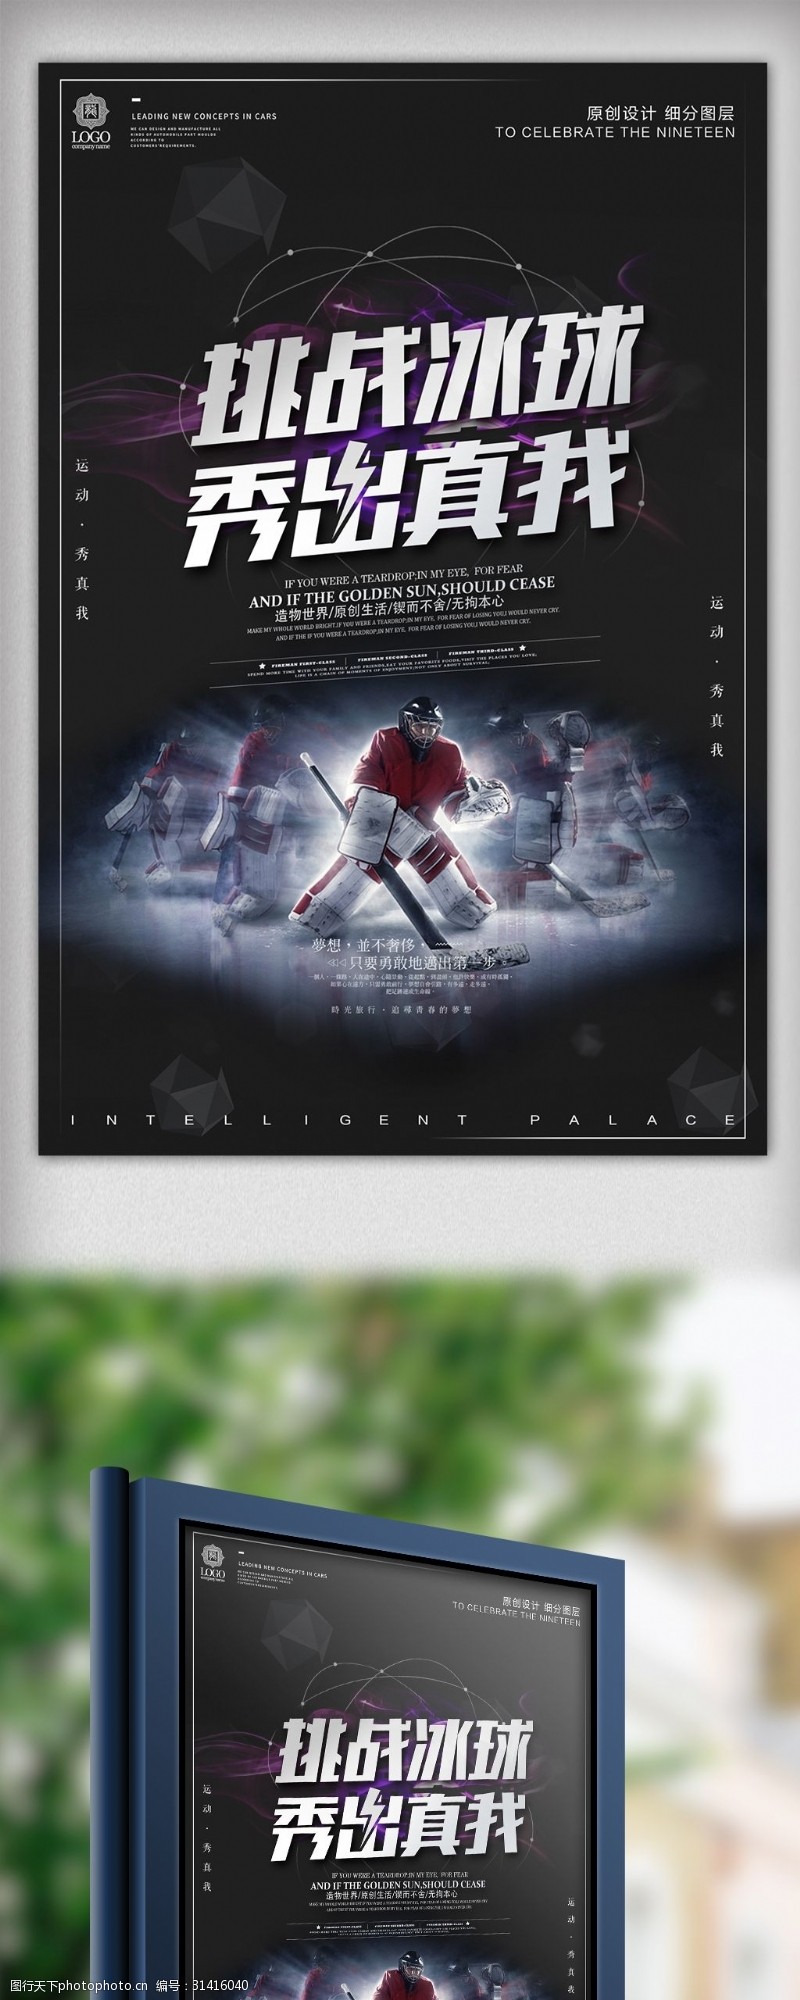 冰球易拉宝酷炫黑色冰球体育促销海报